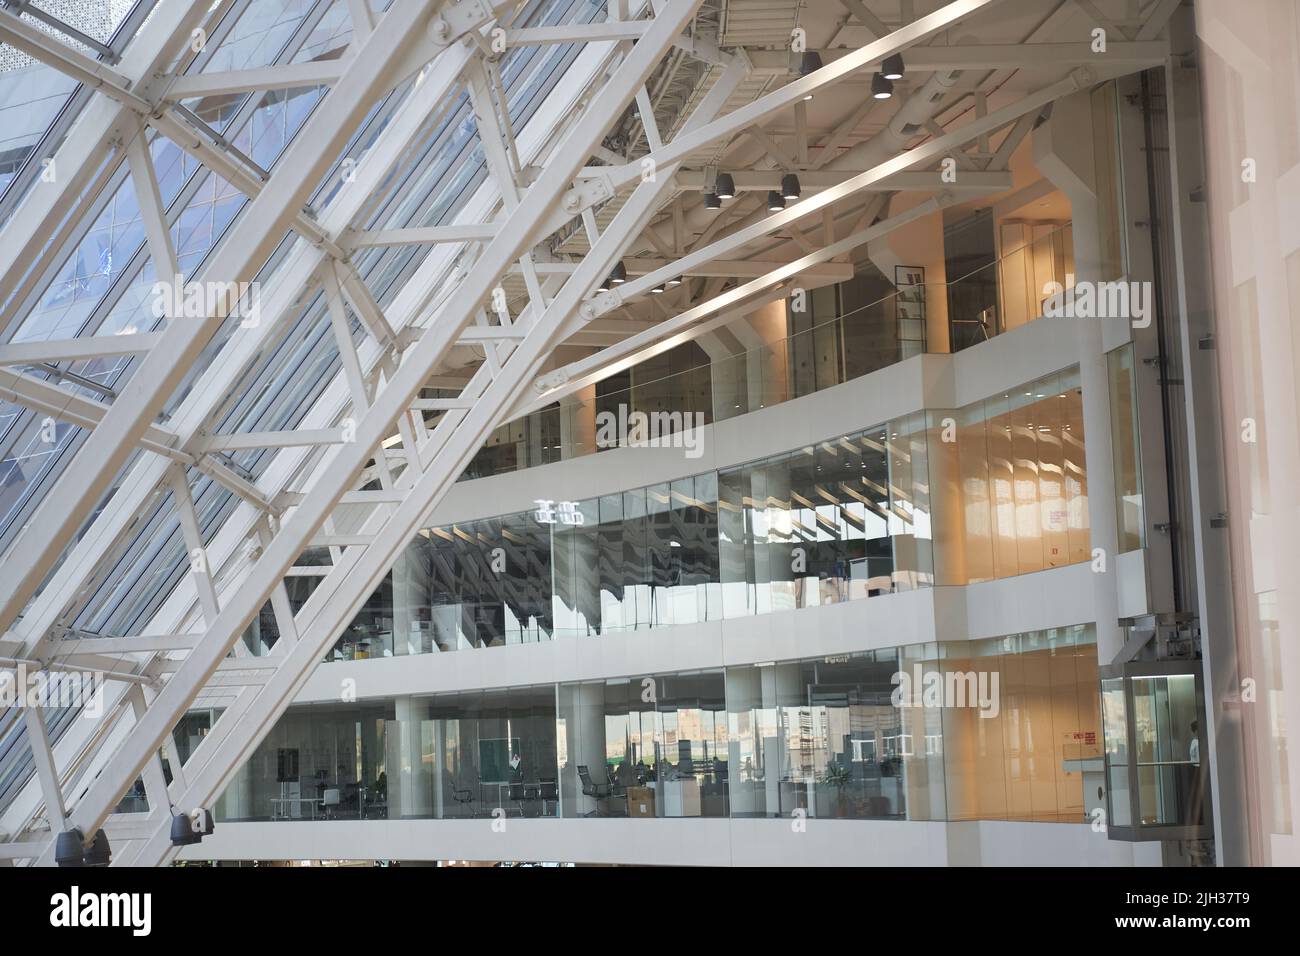 Ein modernes Einkaufszentrum mit luxuriösen Markengeschäften. Selektive Betonung auf einem mehrstöckigen Lichtboden in einem Einkaufszentrum. Gedreht in Jekaterinburg am 05.26.2022. Hochwertige Fotografie Stockfoto